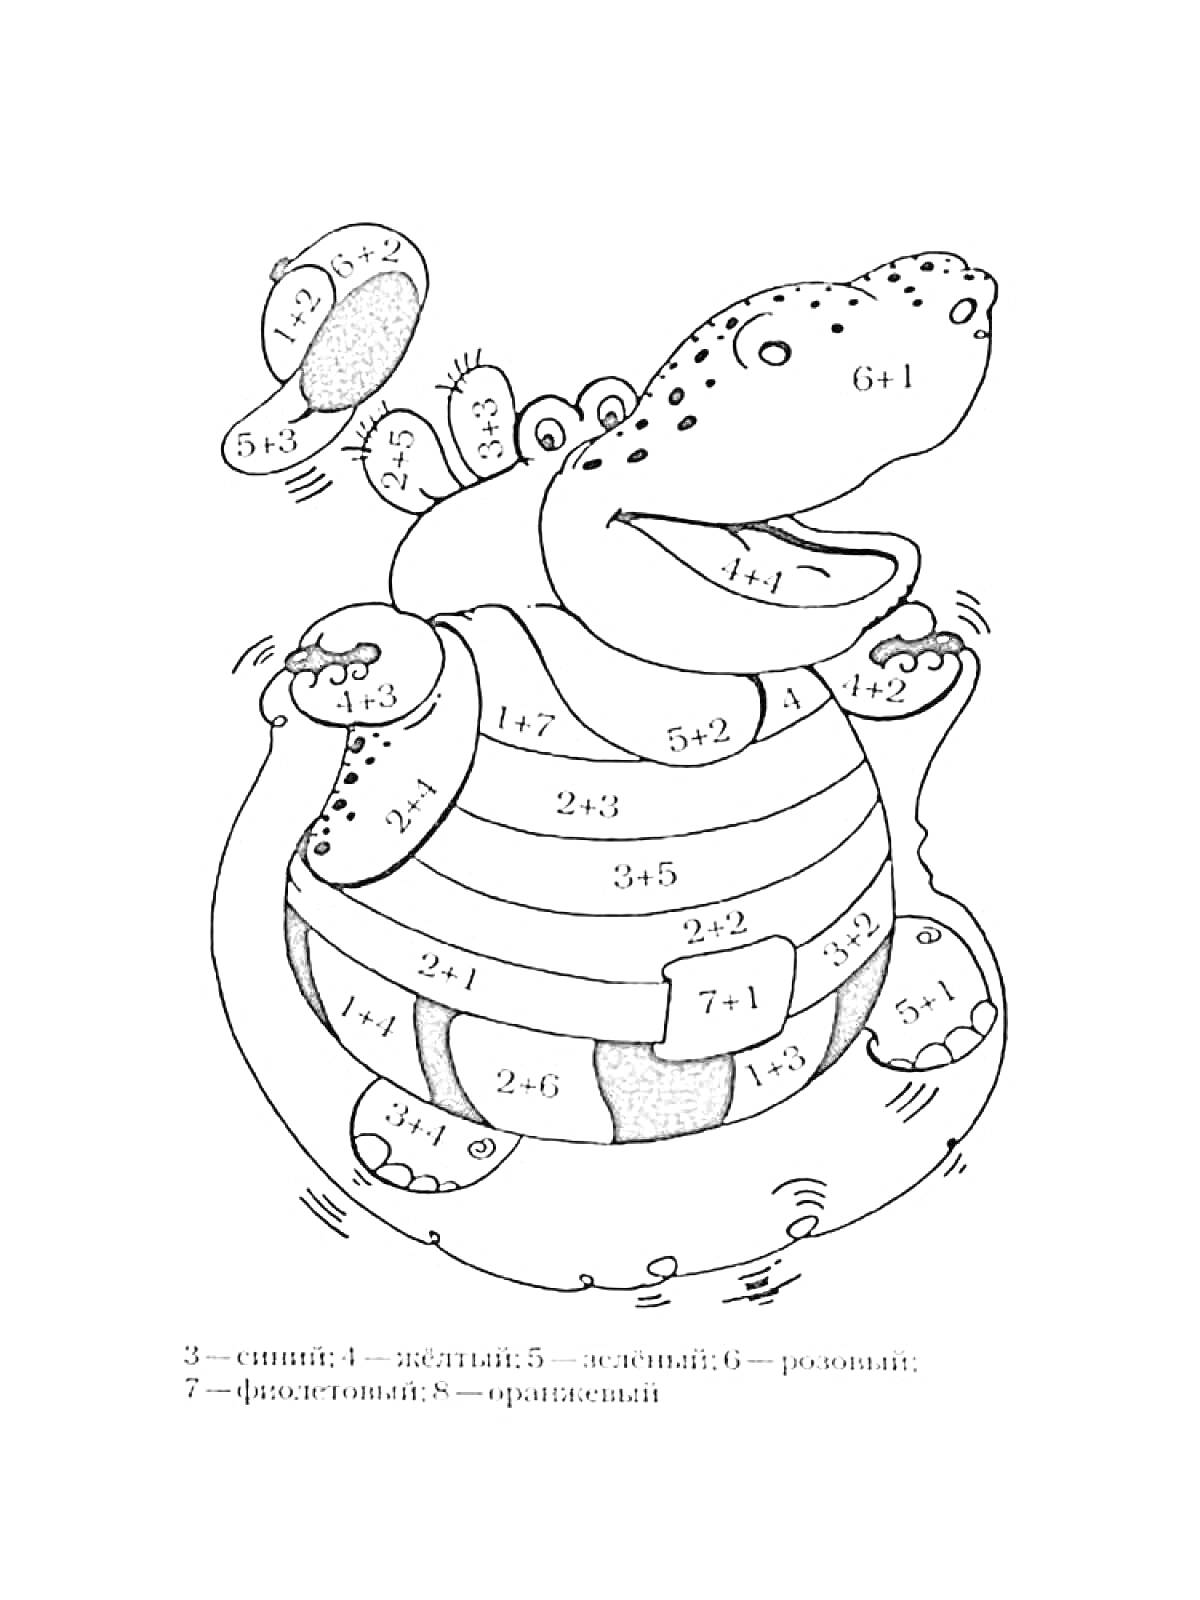 Раскраска Раскраска аллигатора с числами для сложения